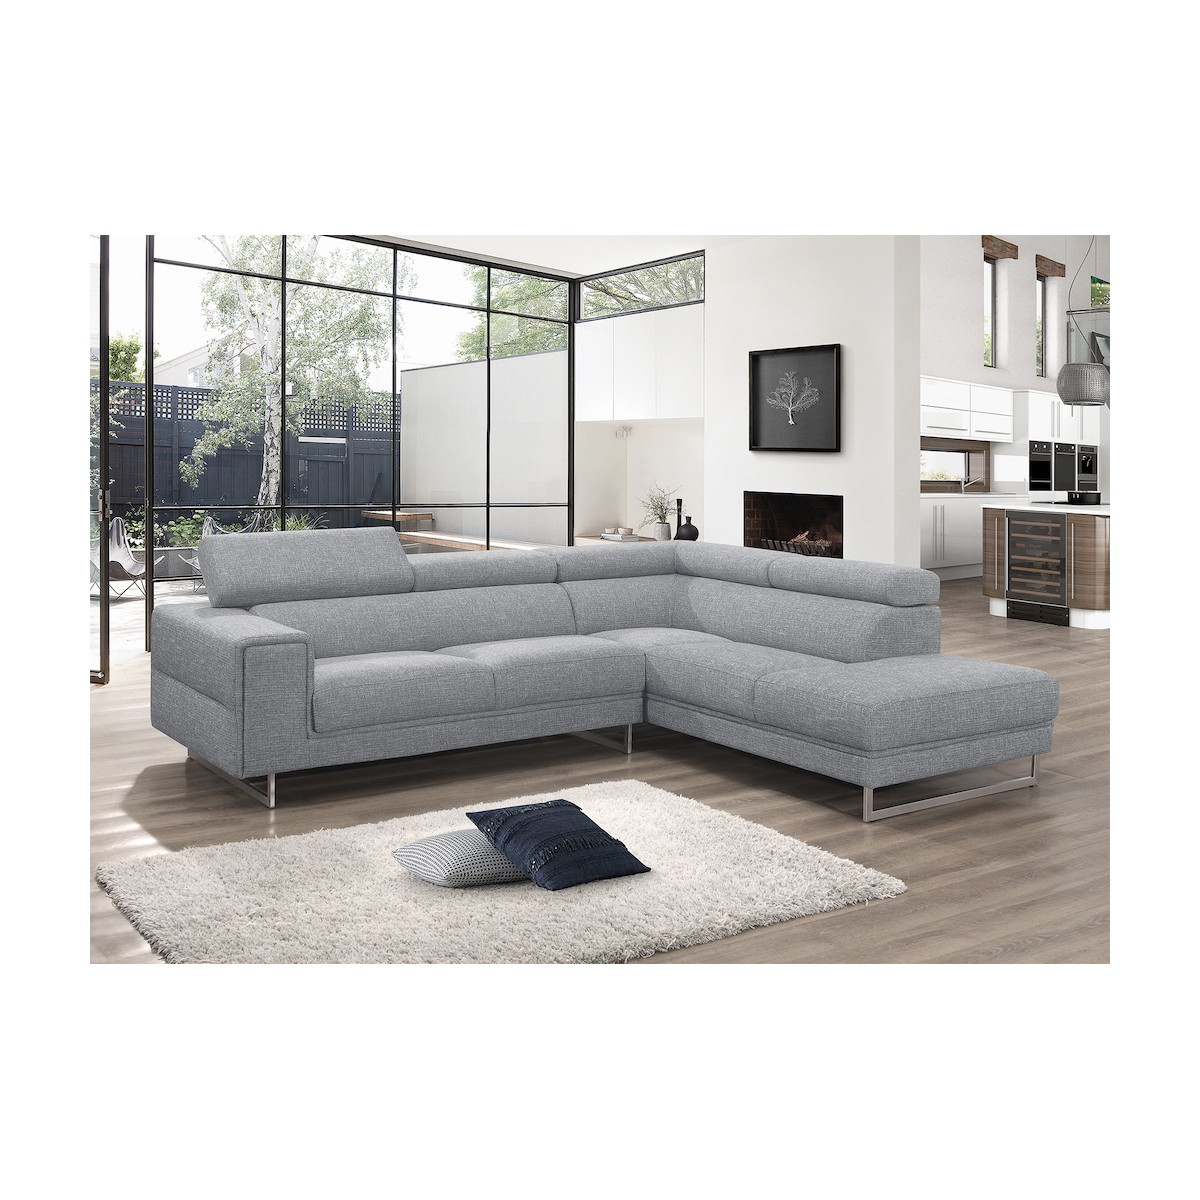 Totalement confortable et design, ce canapé d'angle en tissu gris